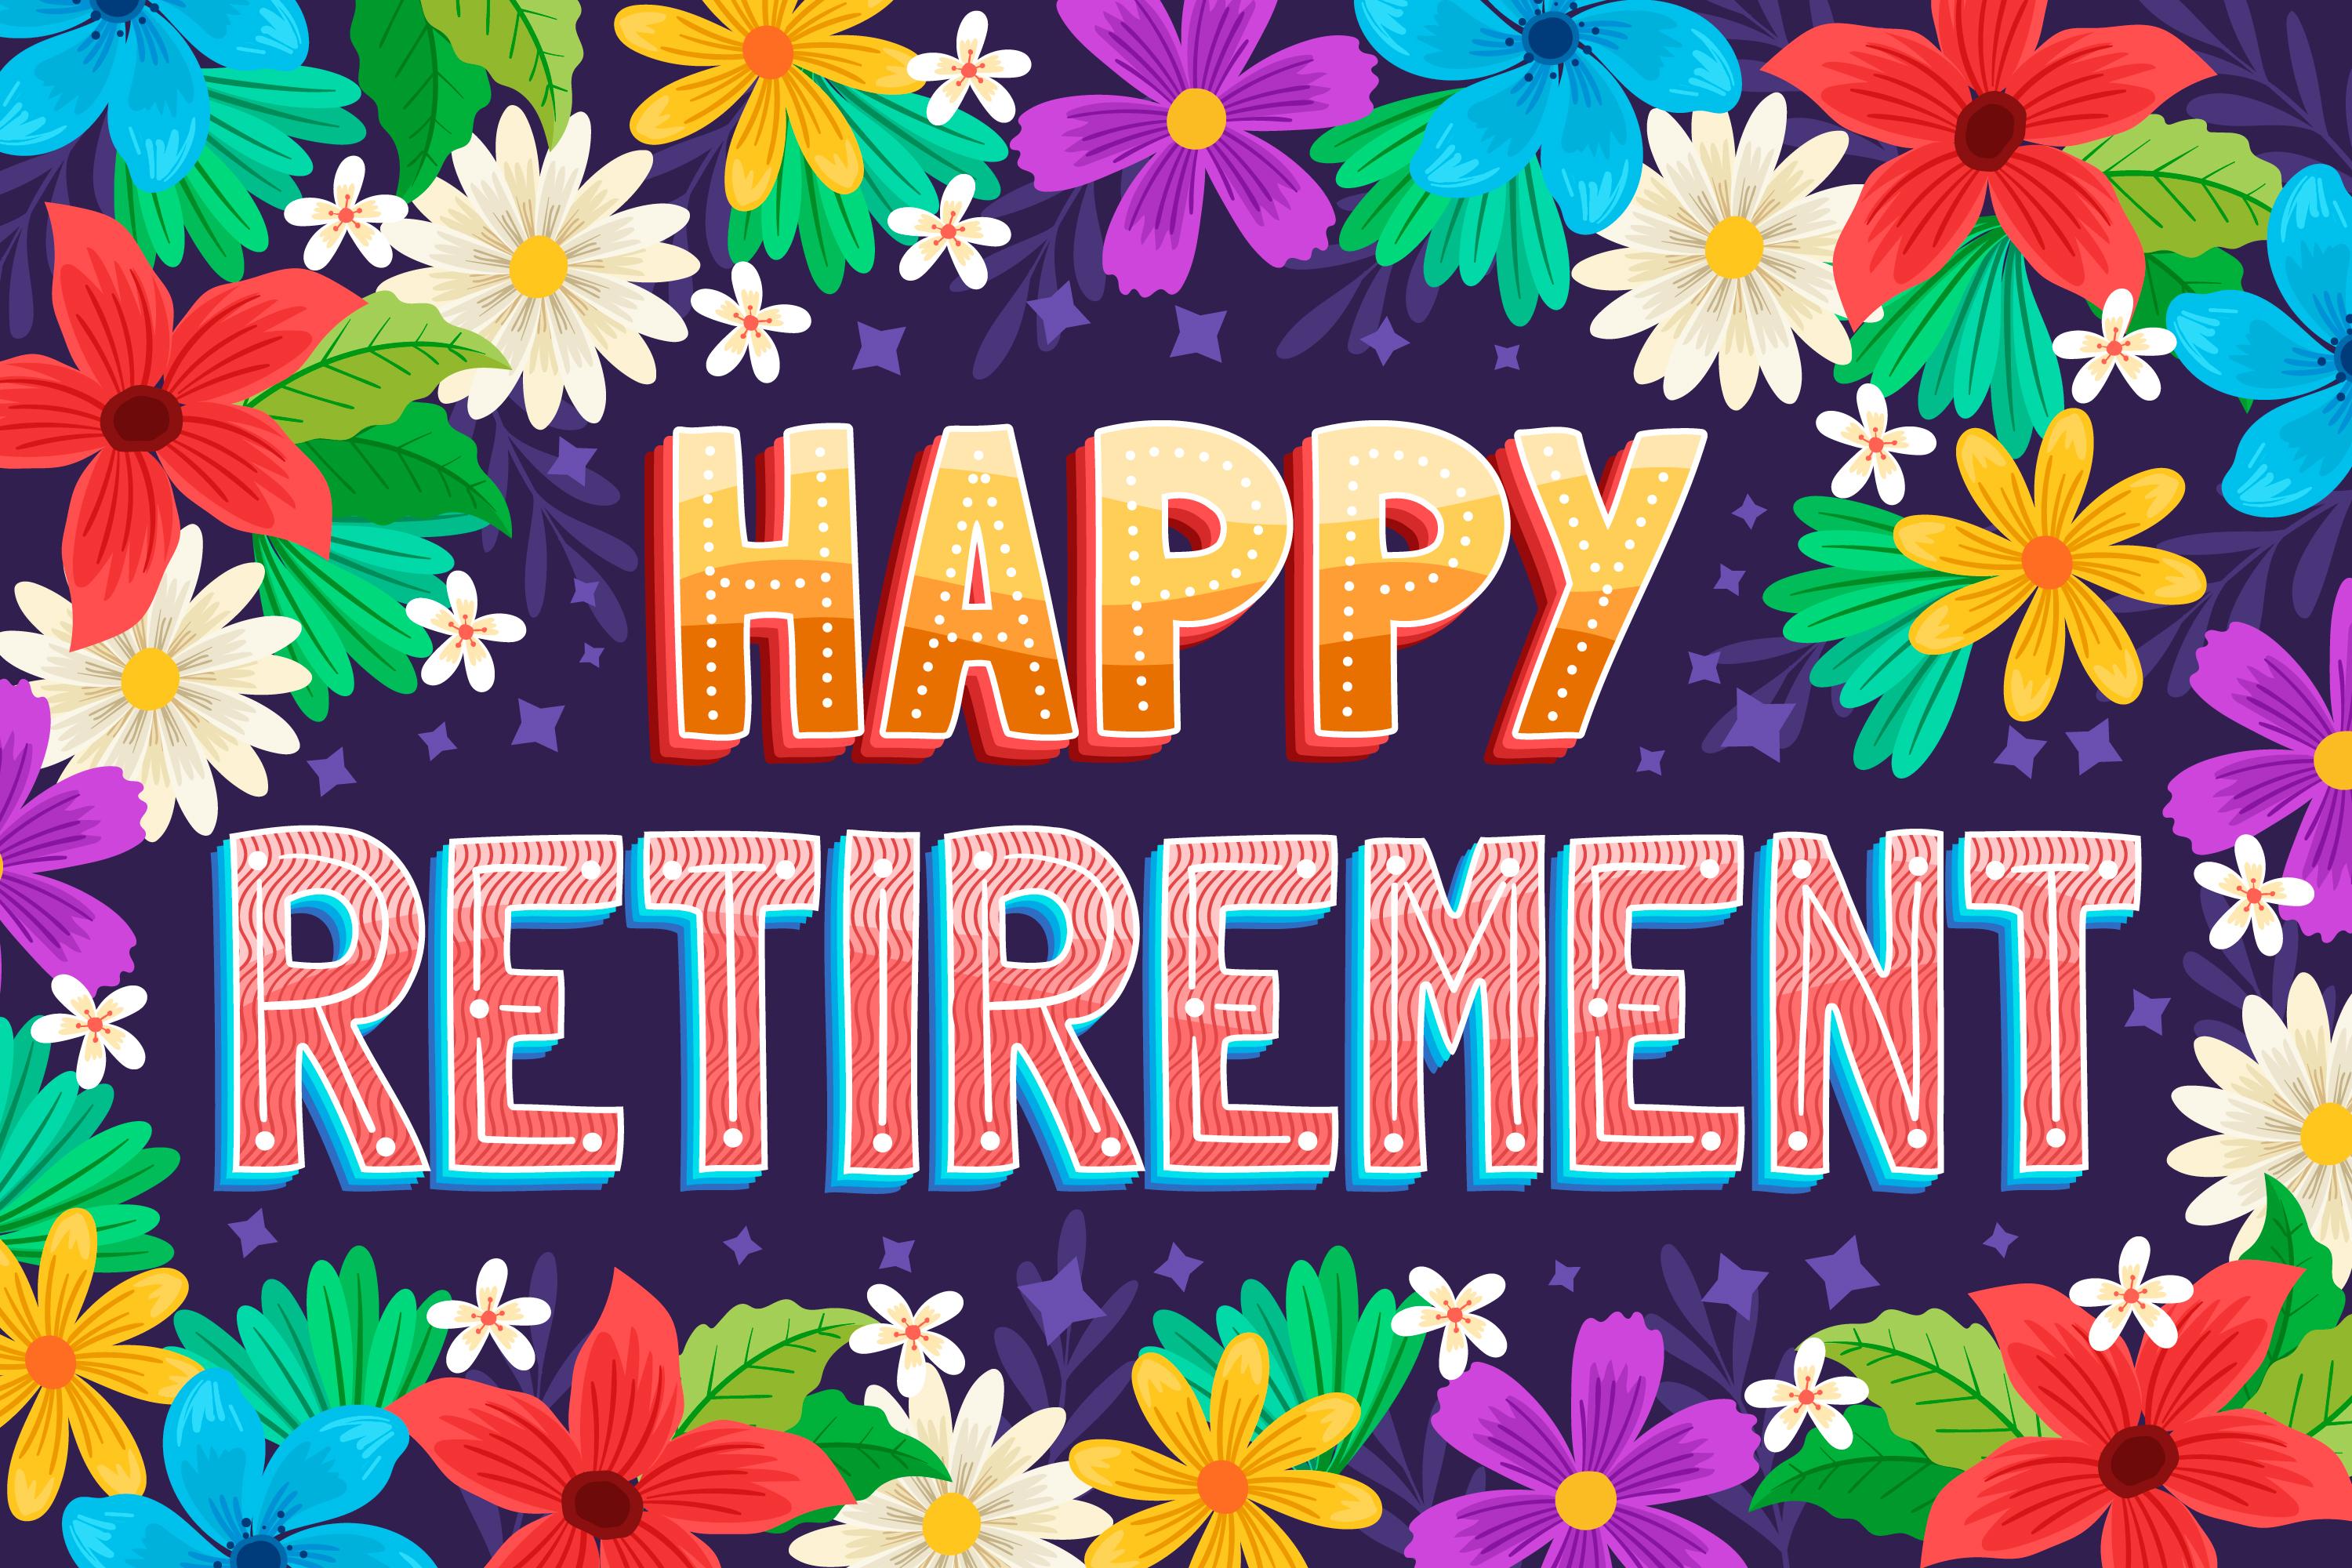 Text: Happy Retirement